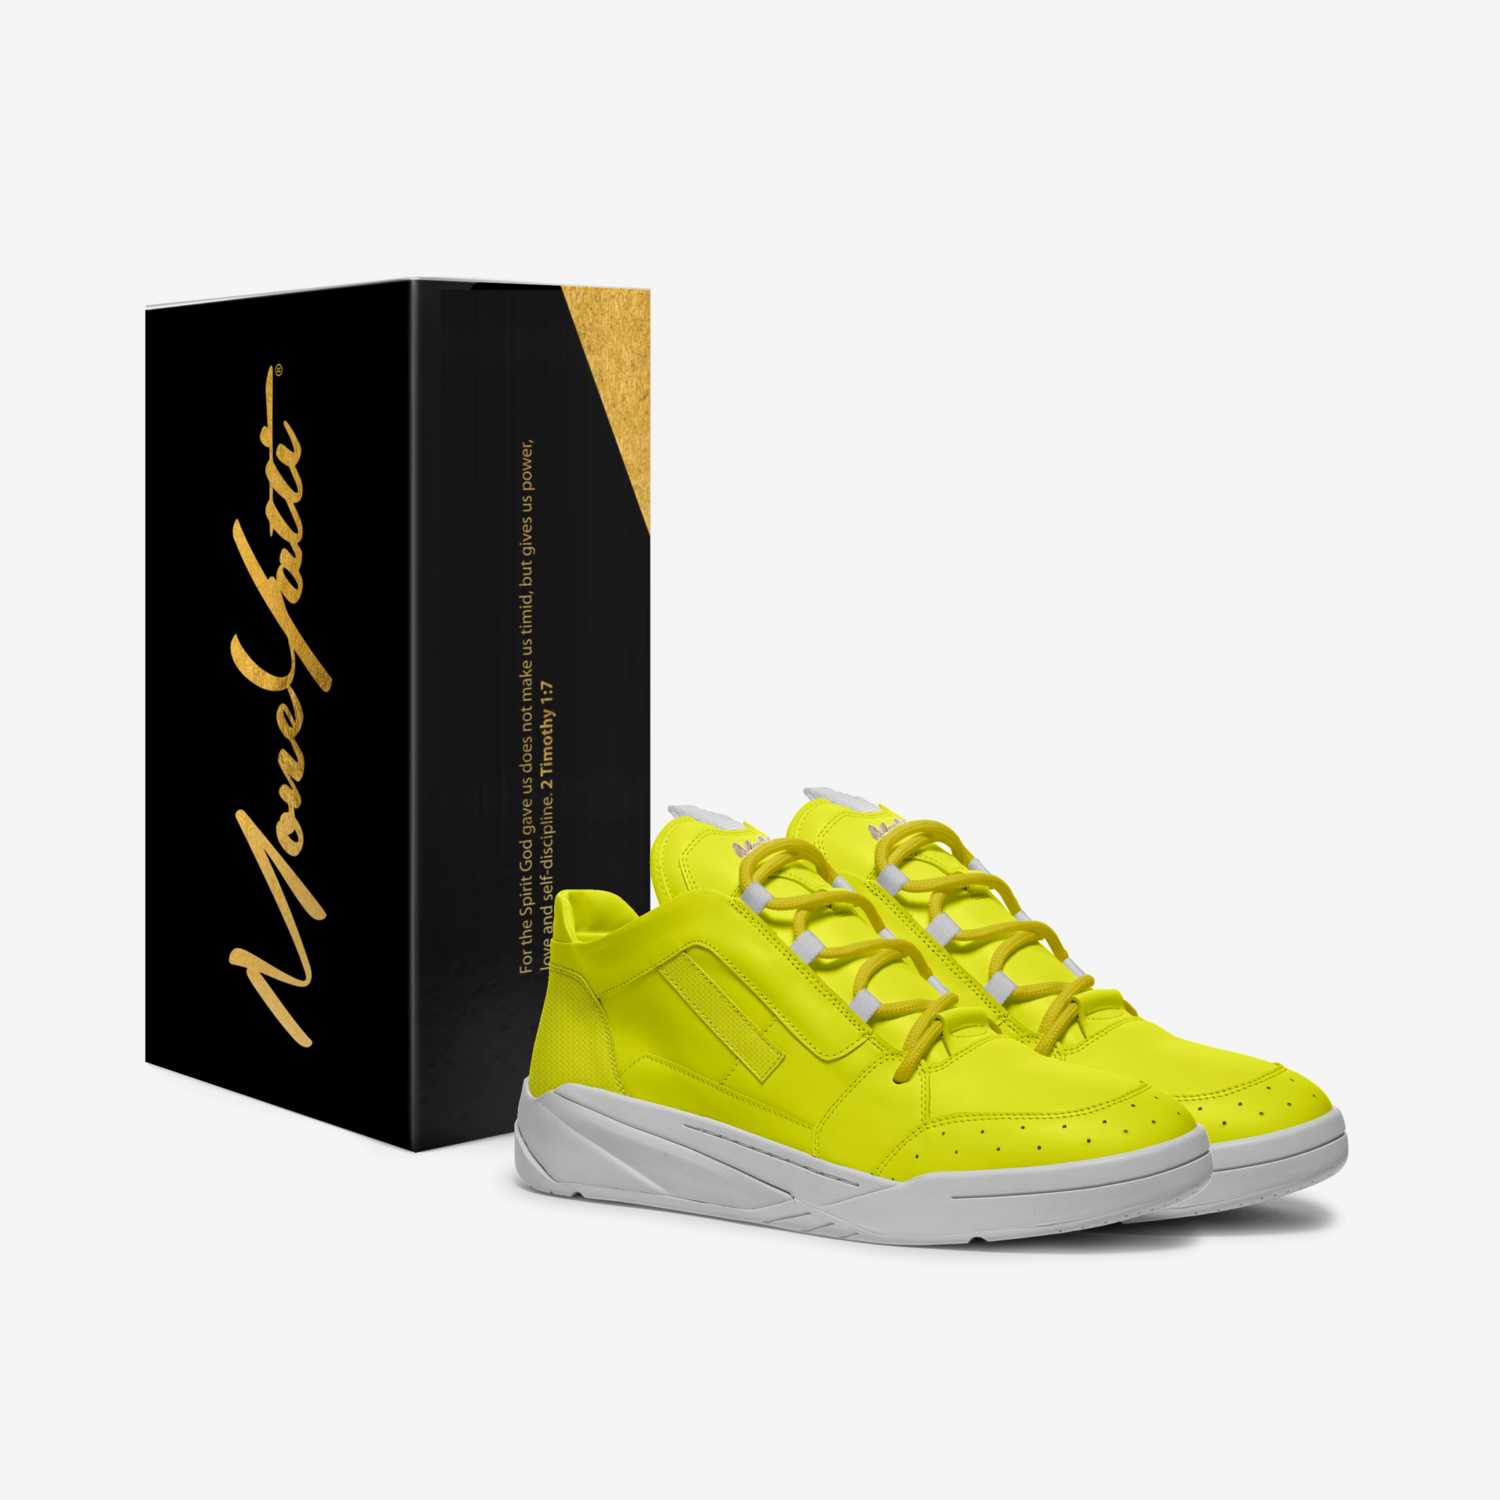 MONEYATTI TURBO 011 custom made in Italy shoes by Moneyatti Brand | Box view